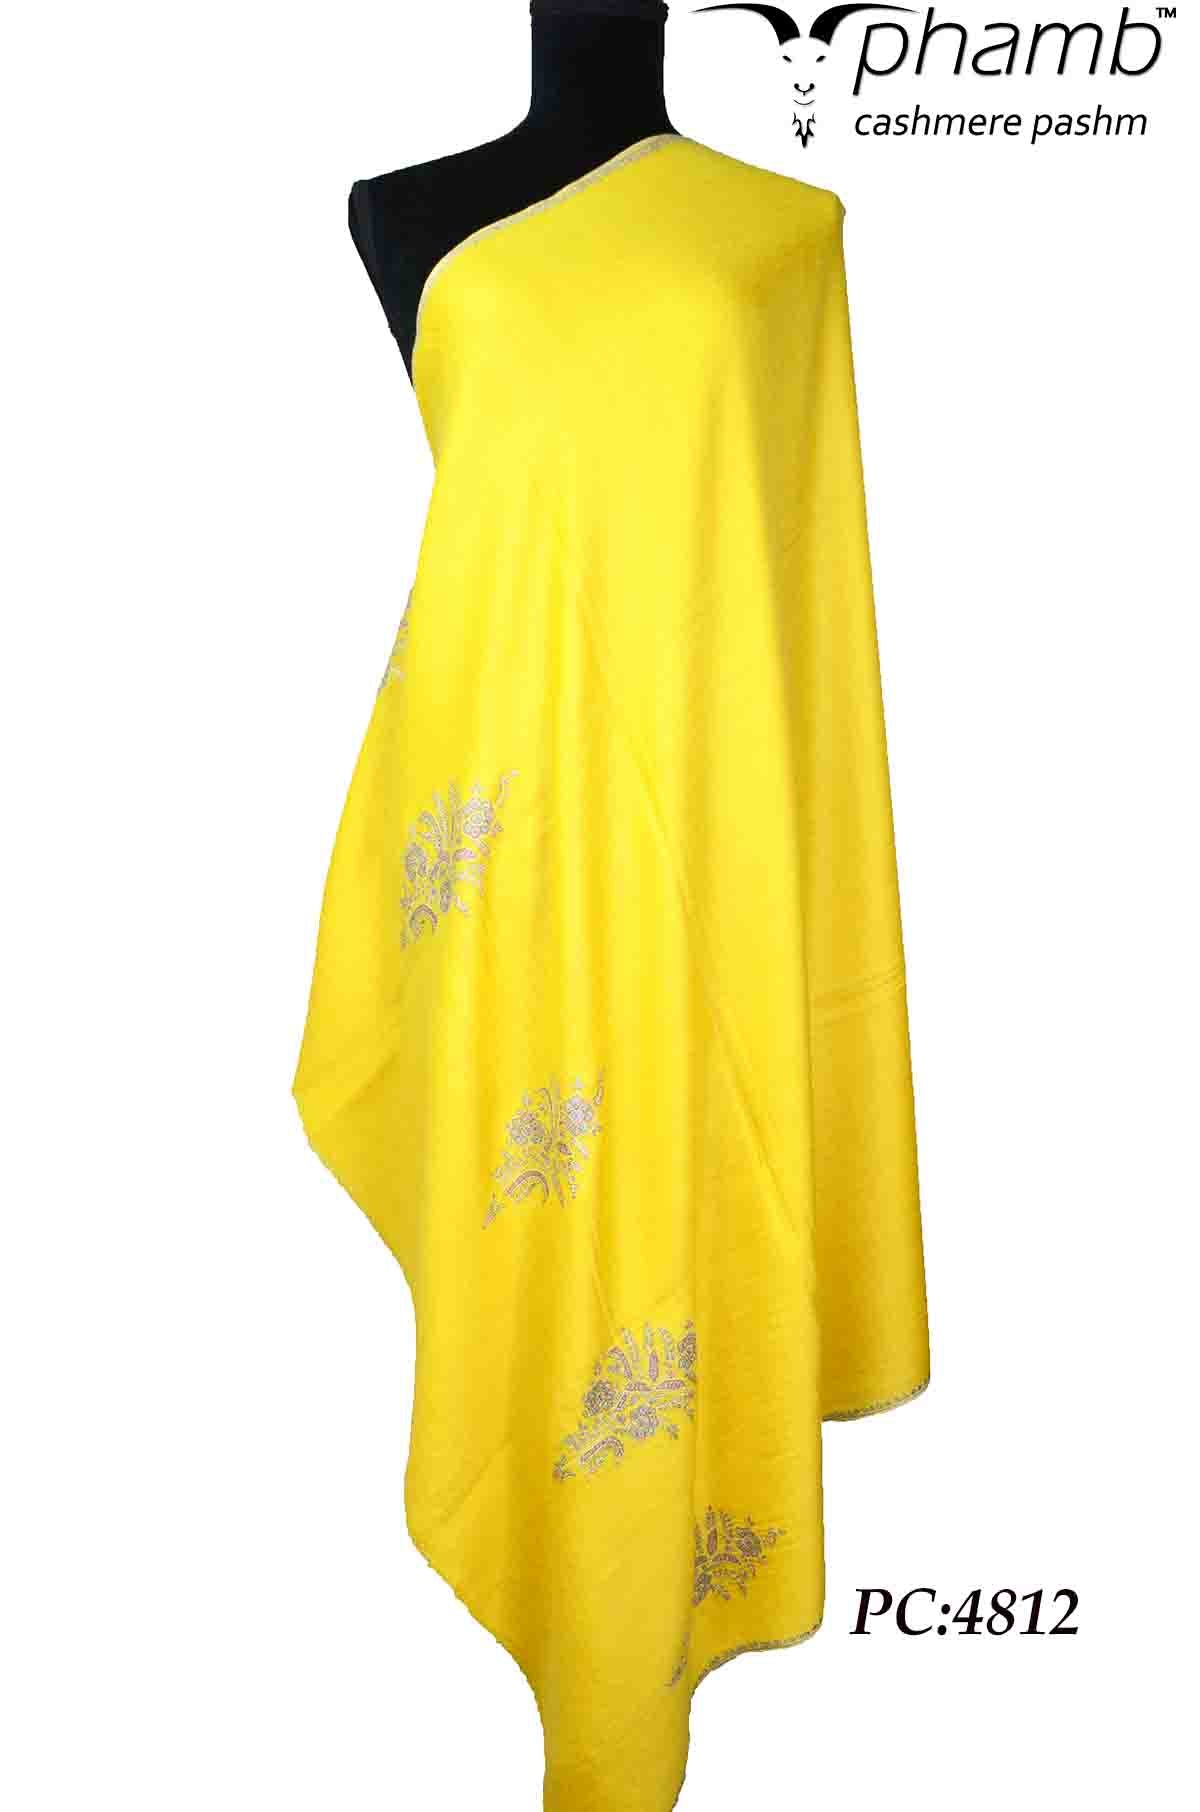 yellow booti shawl - 4812